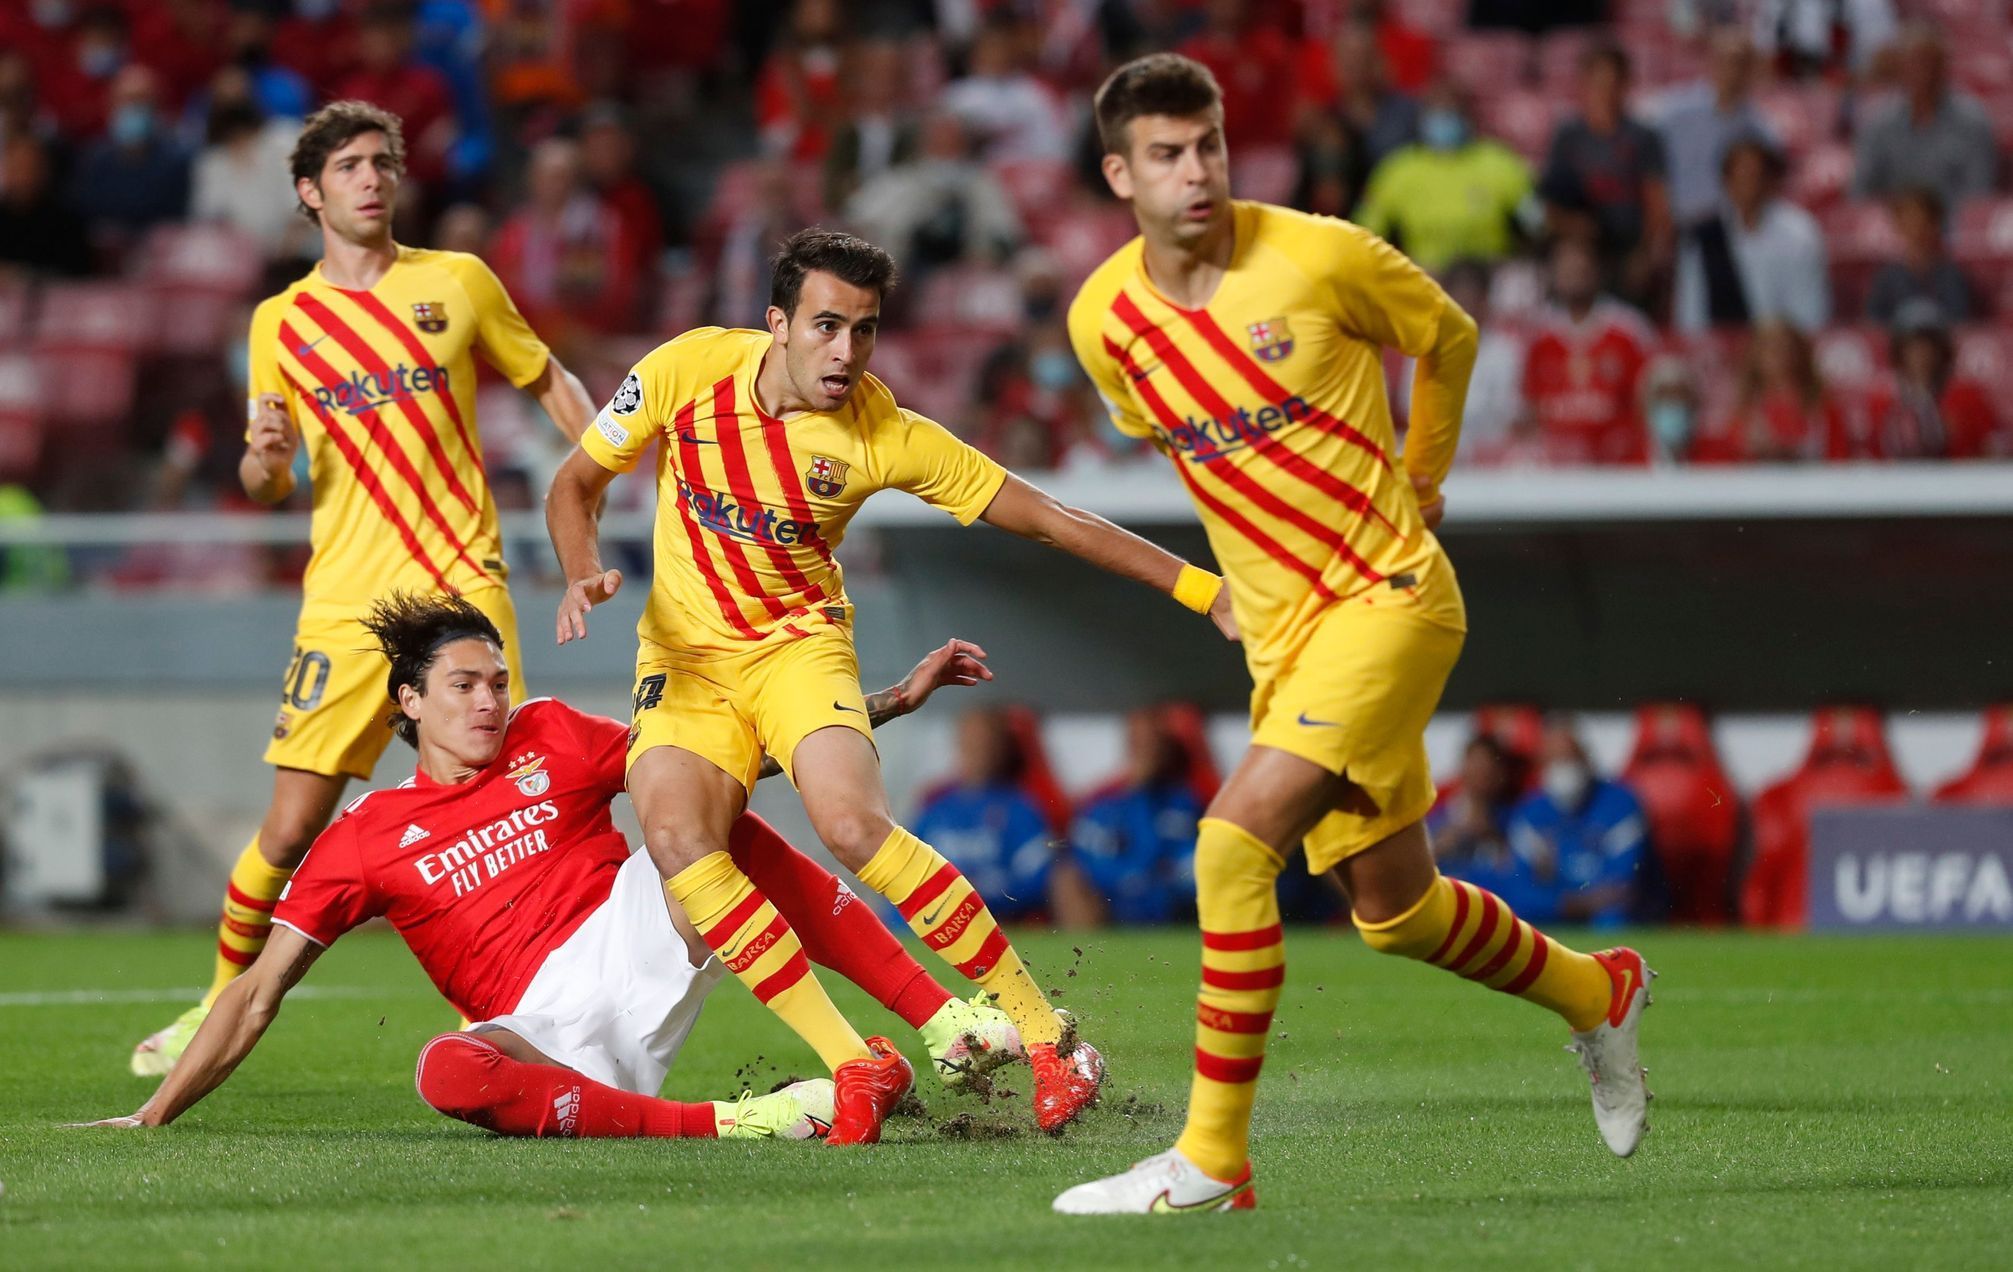 fotbal, Liga mistrů 2021/2022, Champions League - Group E - Benfica v FC Barcelona, Darwin Núňez střílí gól